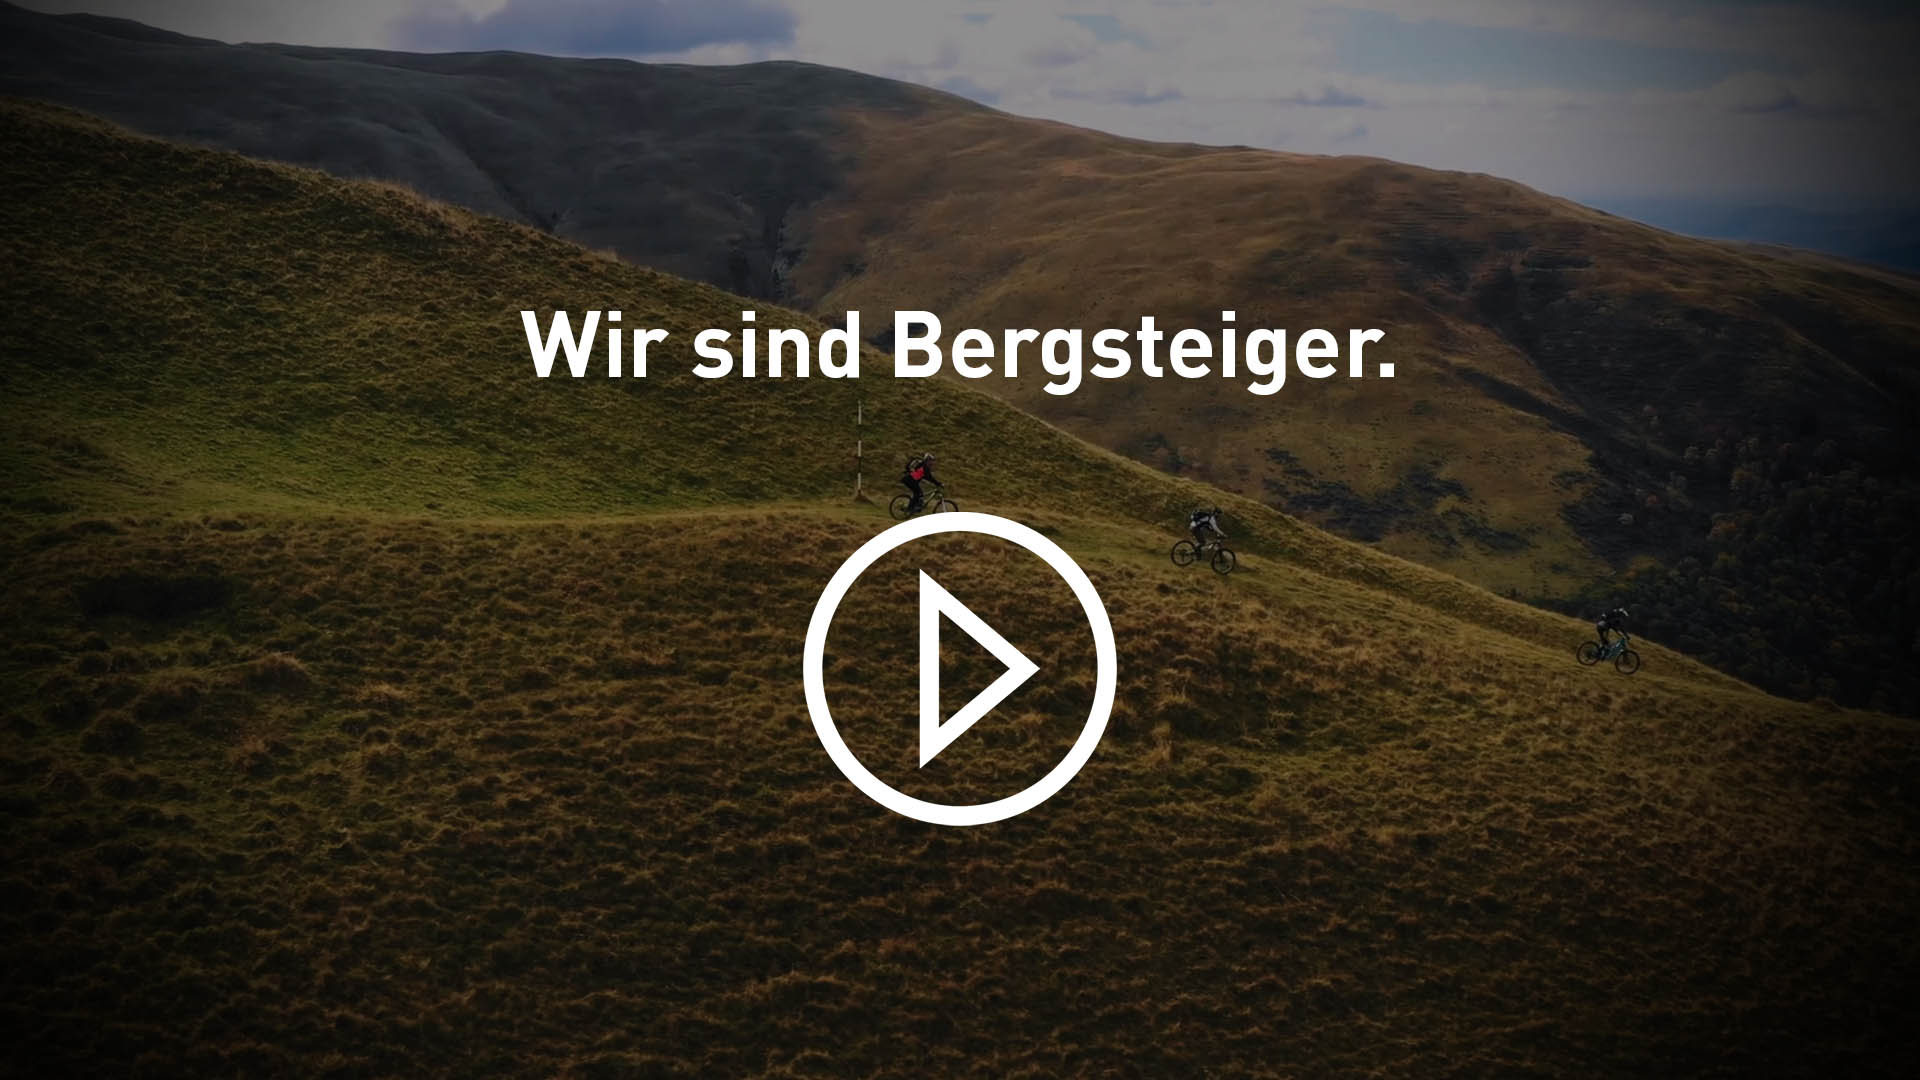 Bergsteiger Fahrrad & E-Bike  Offizielle Bergsteiger Website